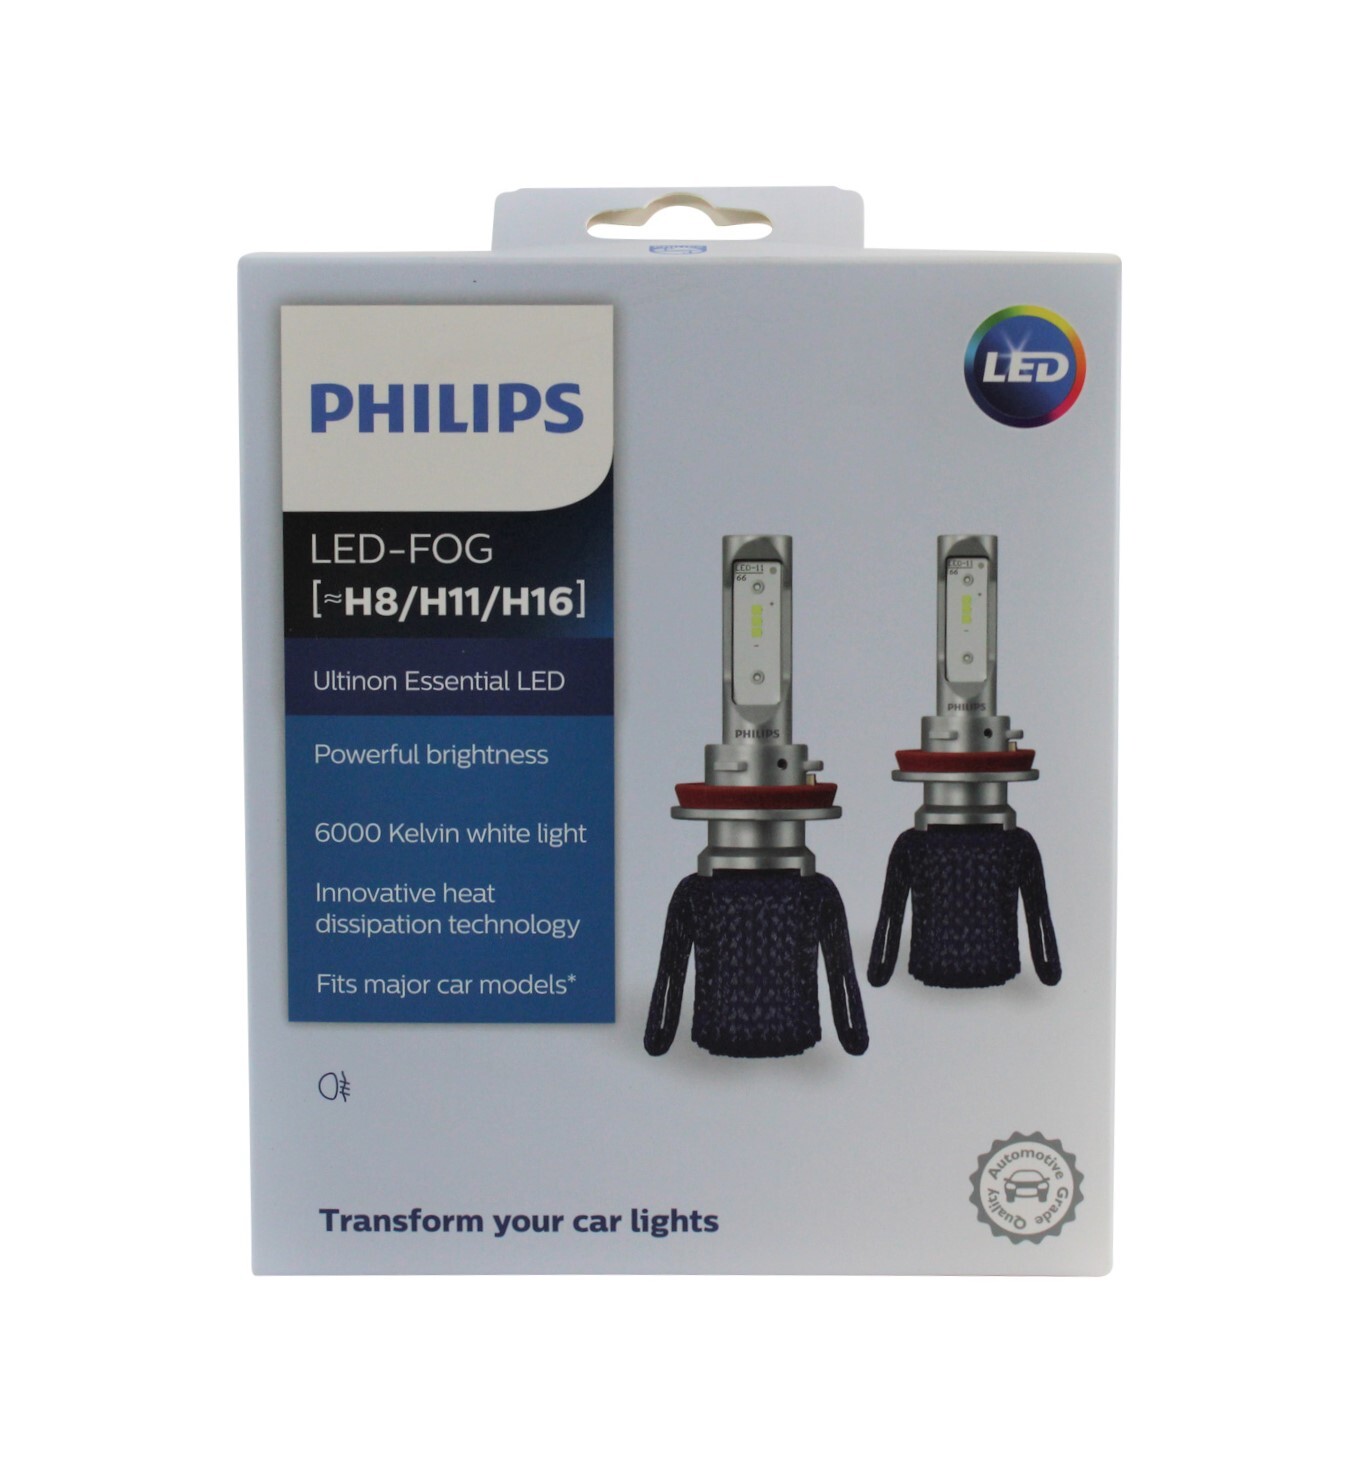 PHILIPS LED Fog Light H8 H11 H16 Ultinon Essential 12v 6000K Bright .